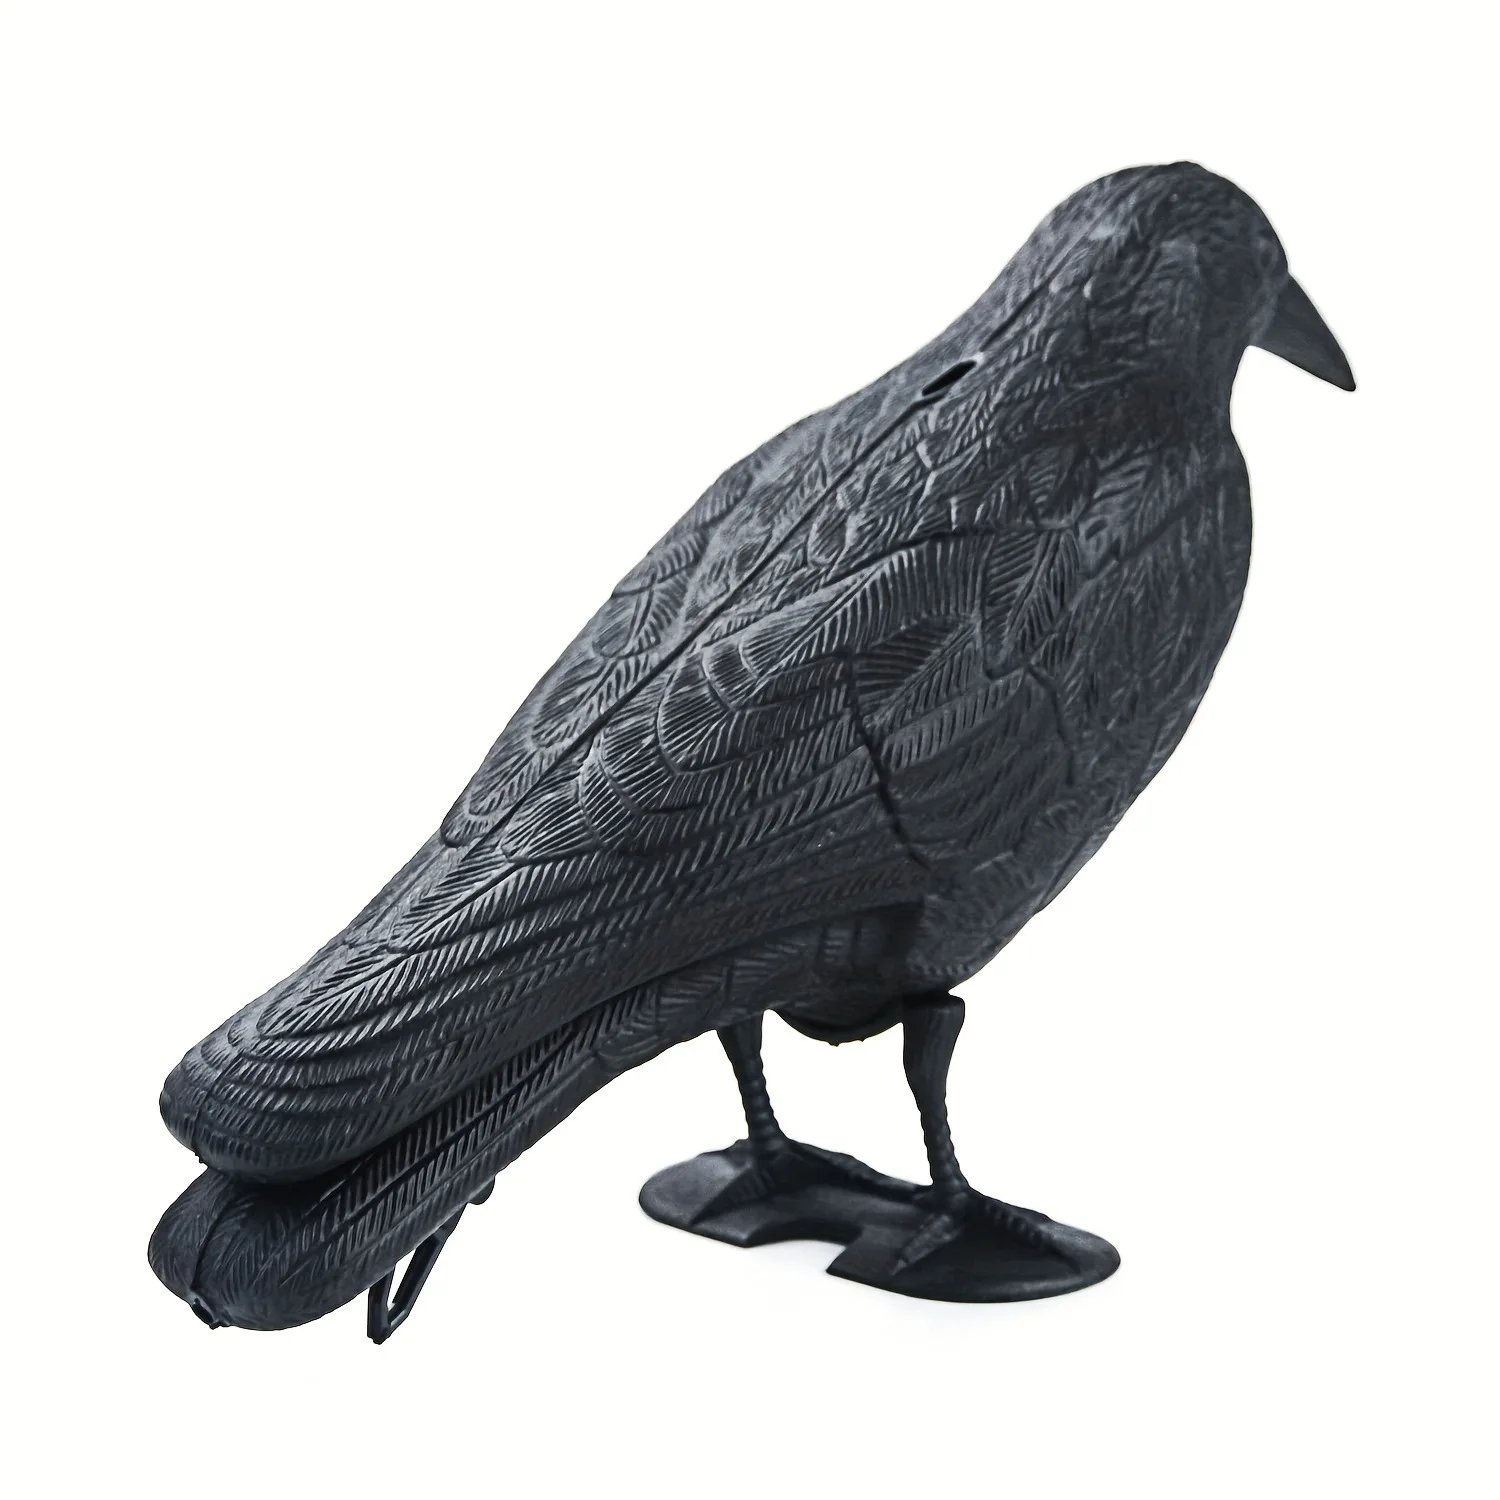 Ornement de fête de corbeau noir d'Halloween, simulation d'oiseau, décoration pour la chasse avec piquets, cour, jardin, bureau, figurine réaliste